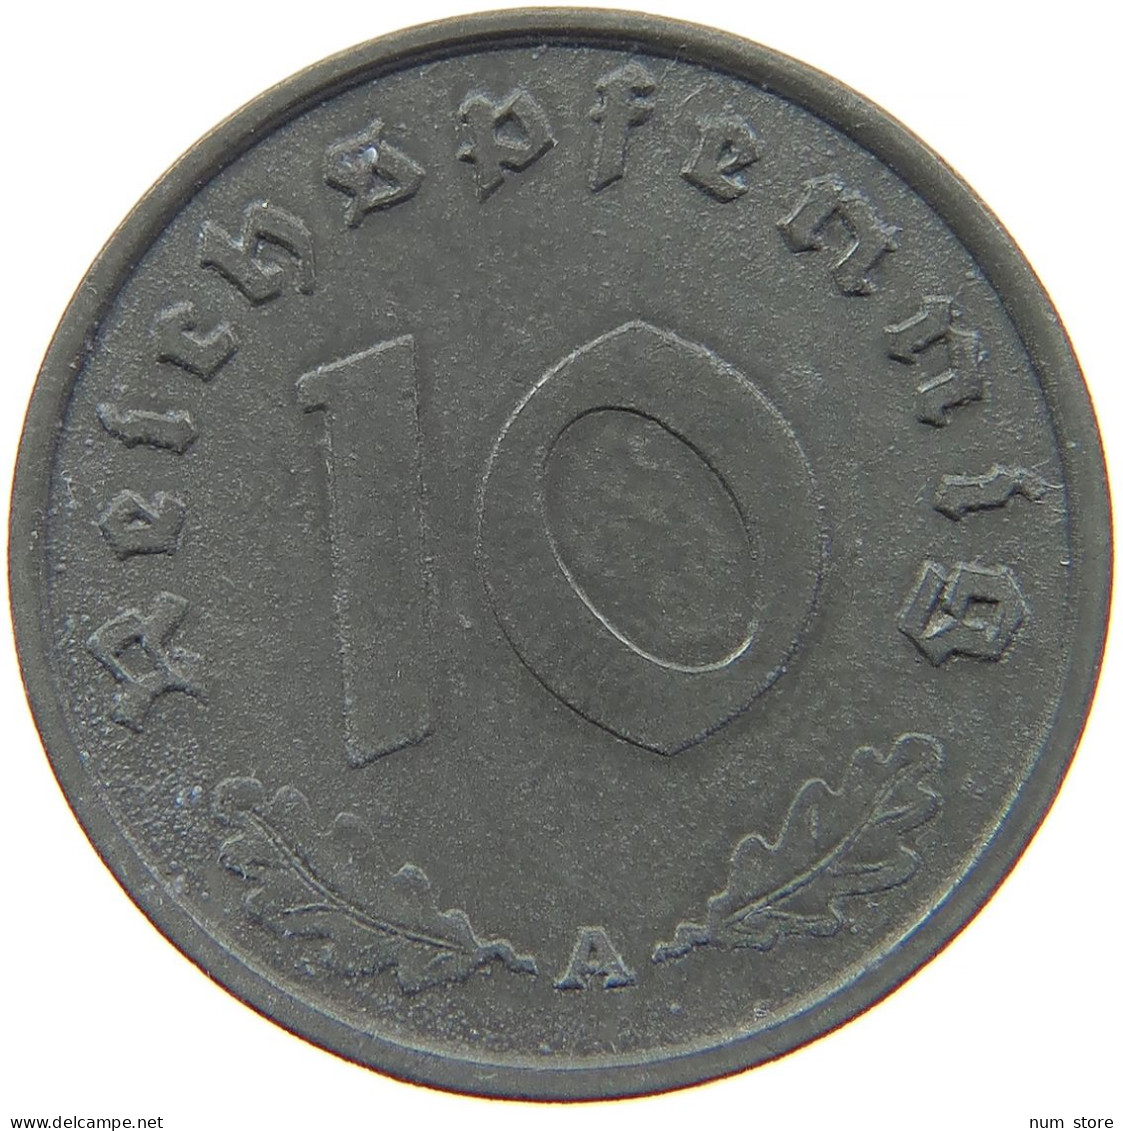 GERMANY 10 REICHSPFENNIG 1941 A #s095 0093 - 10 Reichspfennig